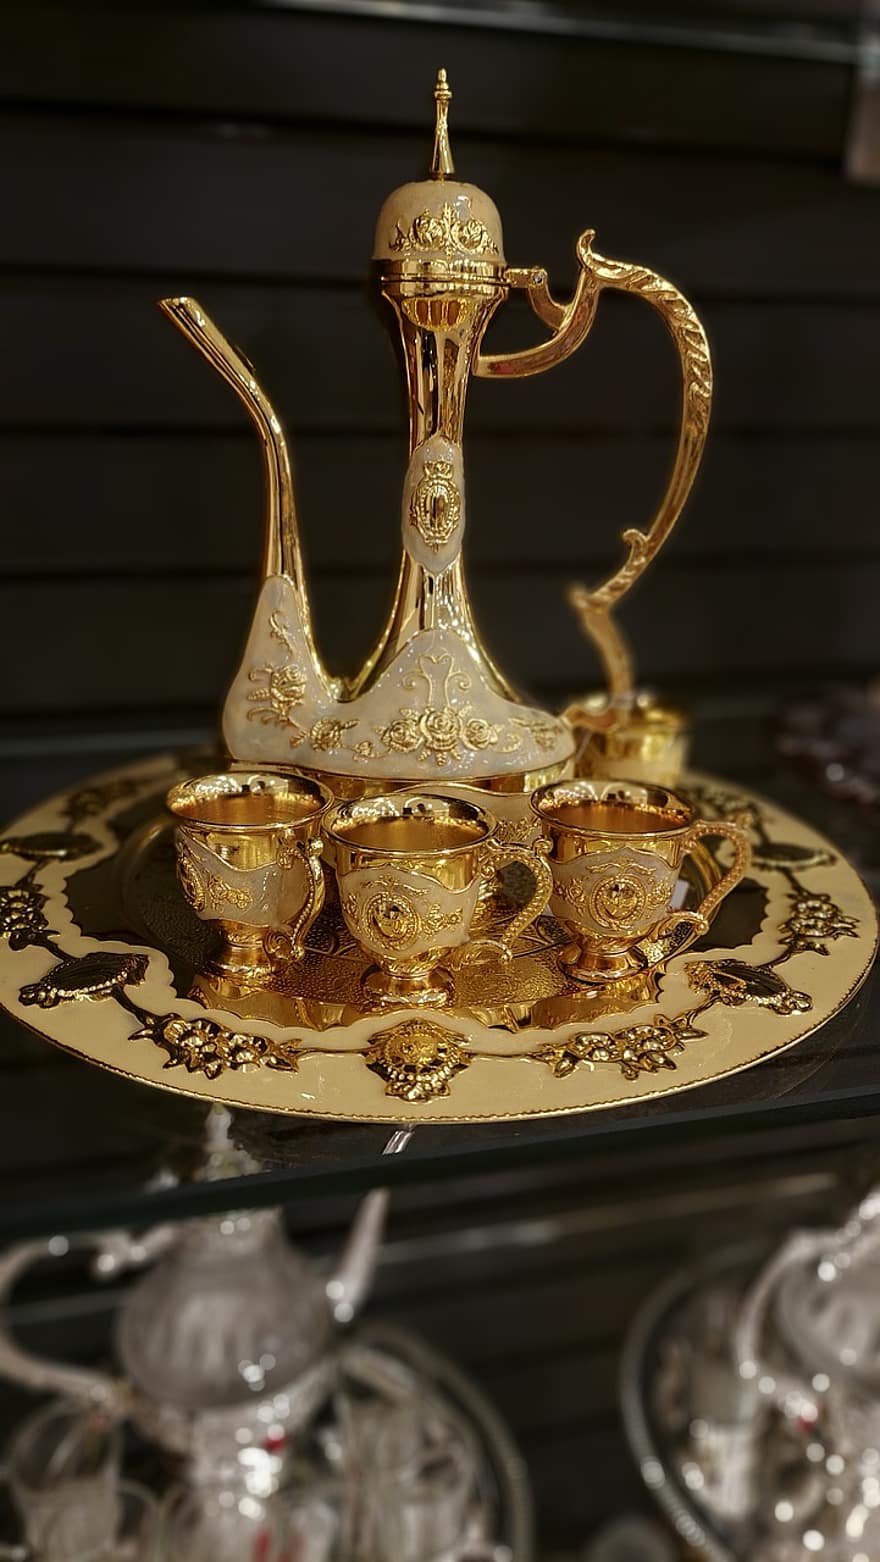 Ấm trà vàng, bộ trà, Bộ trà trang trí công phu, các nền văn hóa, trang trí, vàng, đồ cổ, cận cảnh, sáng bóng, kim loại, quà lưu niệm